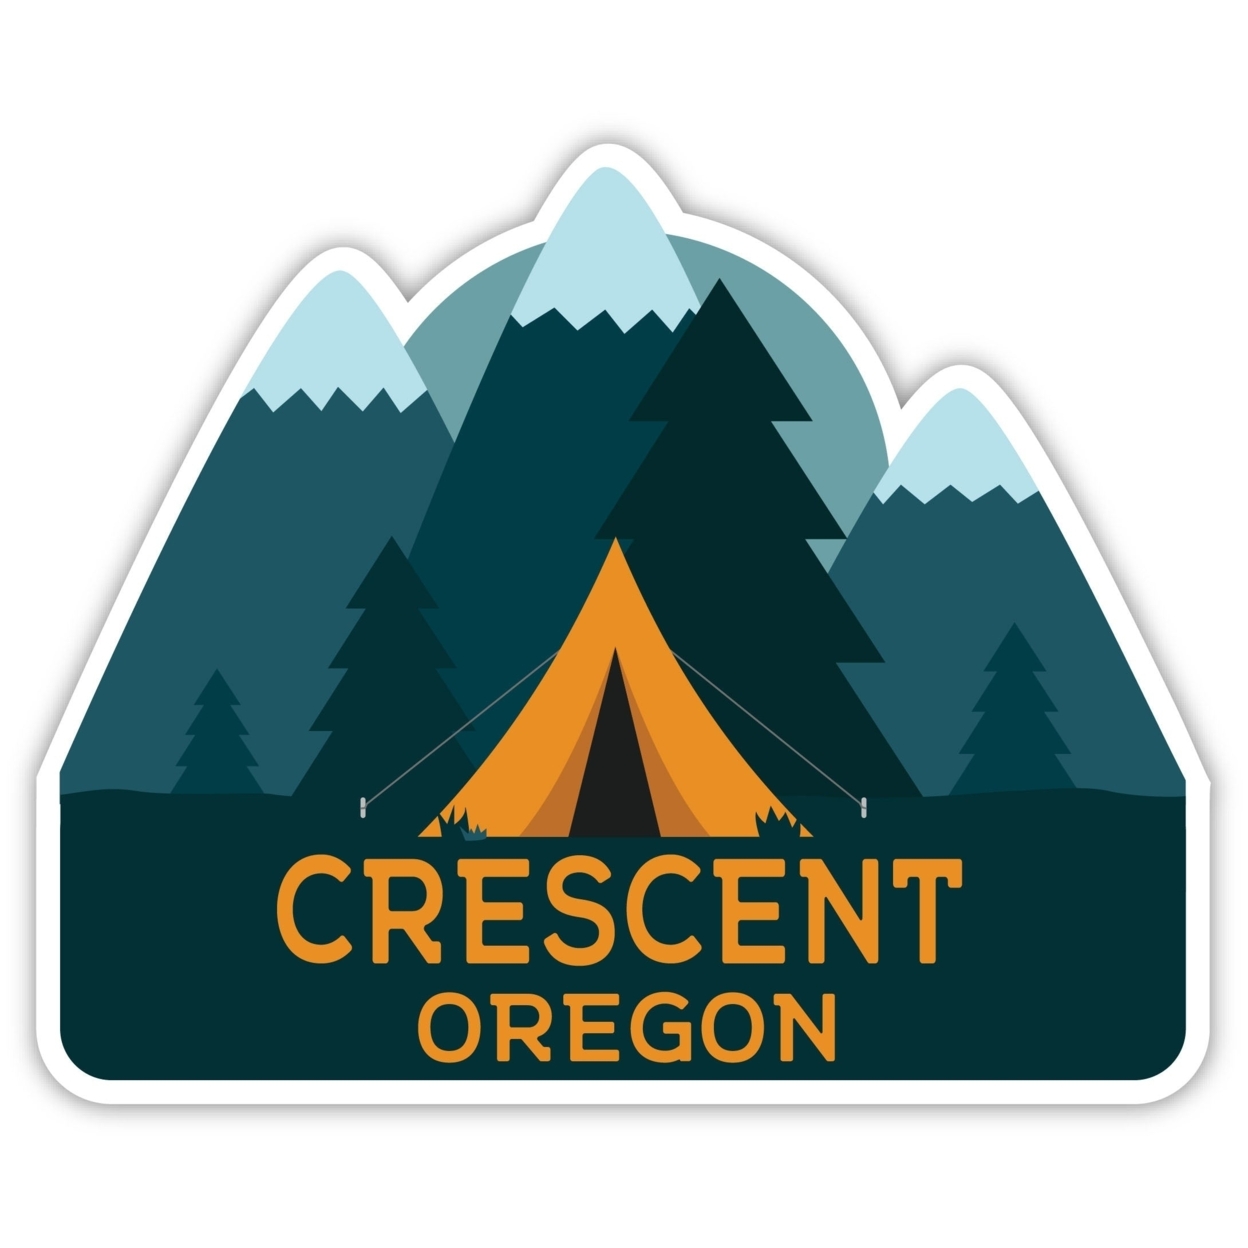 Crescent Oregon Souvenir Decorative Stickers (Choose Theme And Size) - Single Unit, 10-Inch, Tent